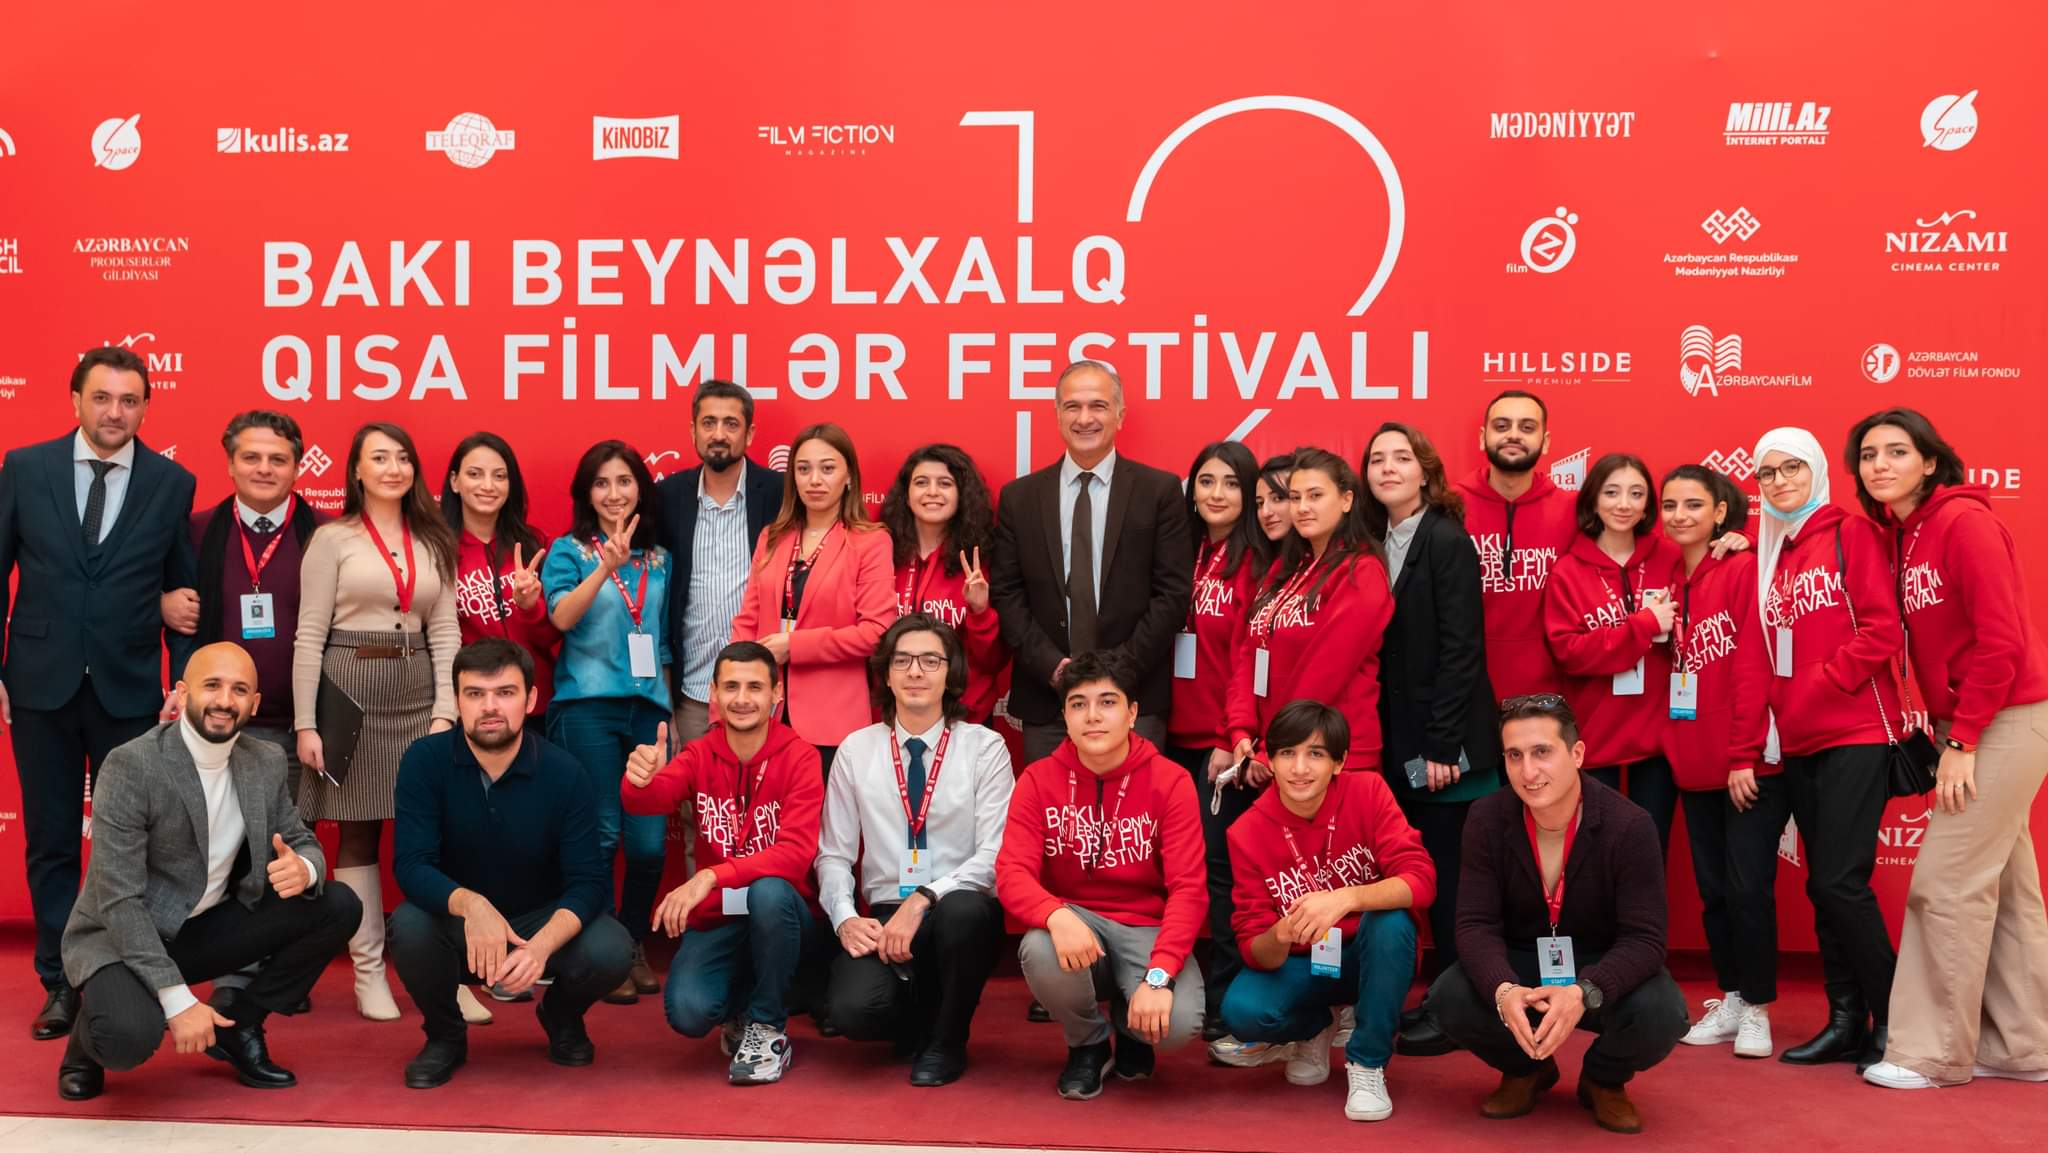 Bakı Beynəlxalq Qısa Filmlər Festivalında qaliblər müəyyənləşdi -